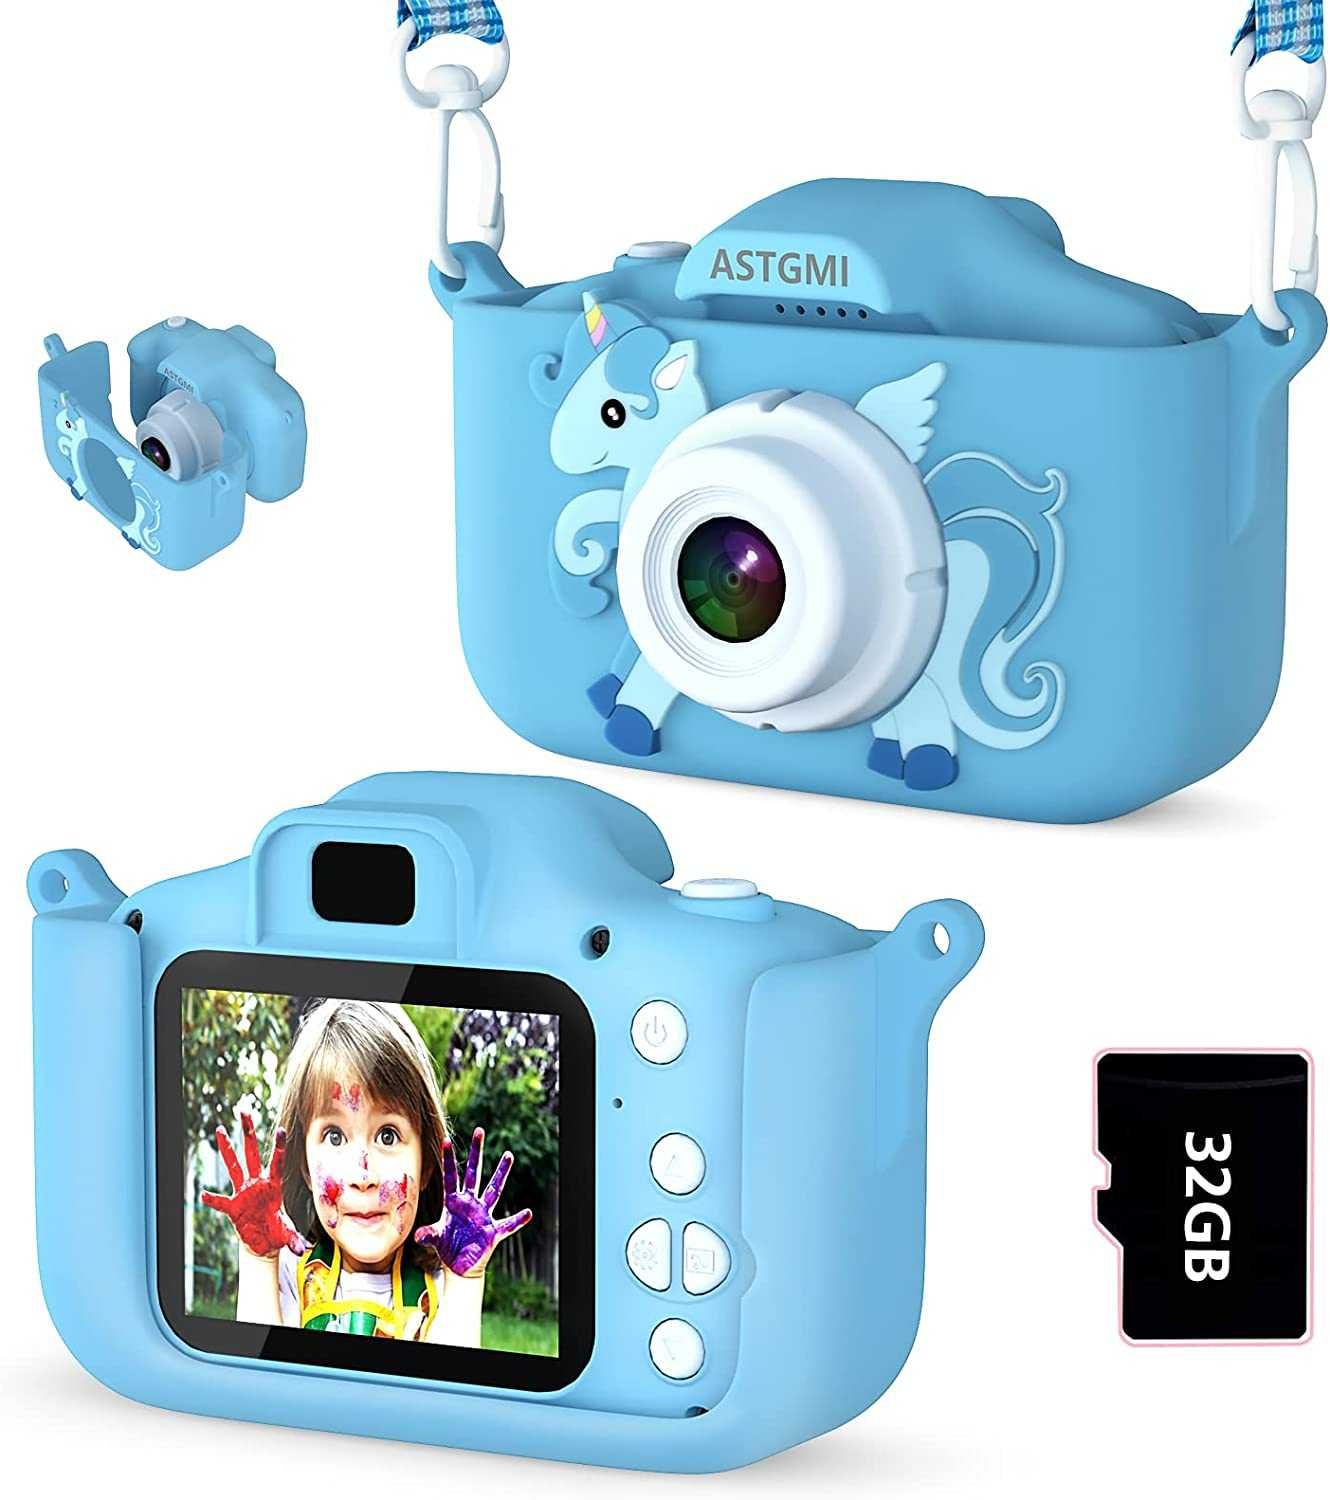 ASTGMI C3 aparat dla dzieci 32GB 12MP gry ramki Foto video zdjęcia